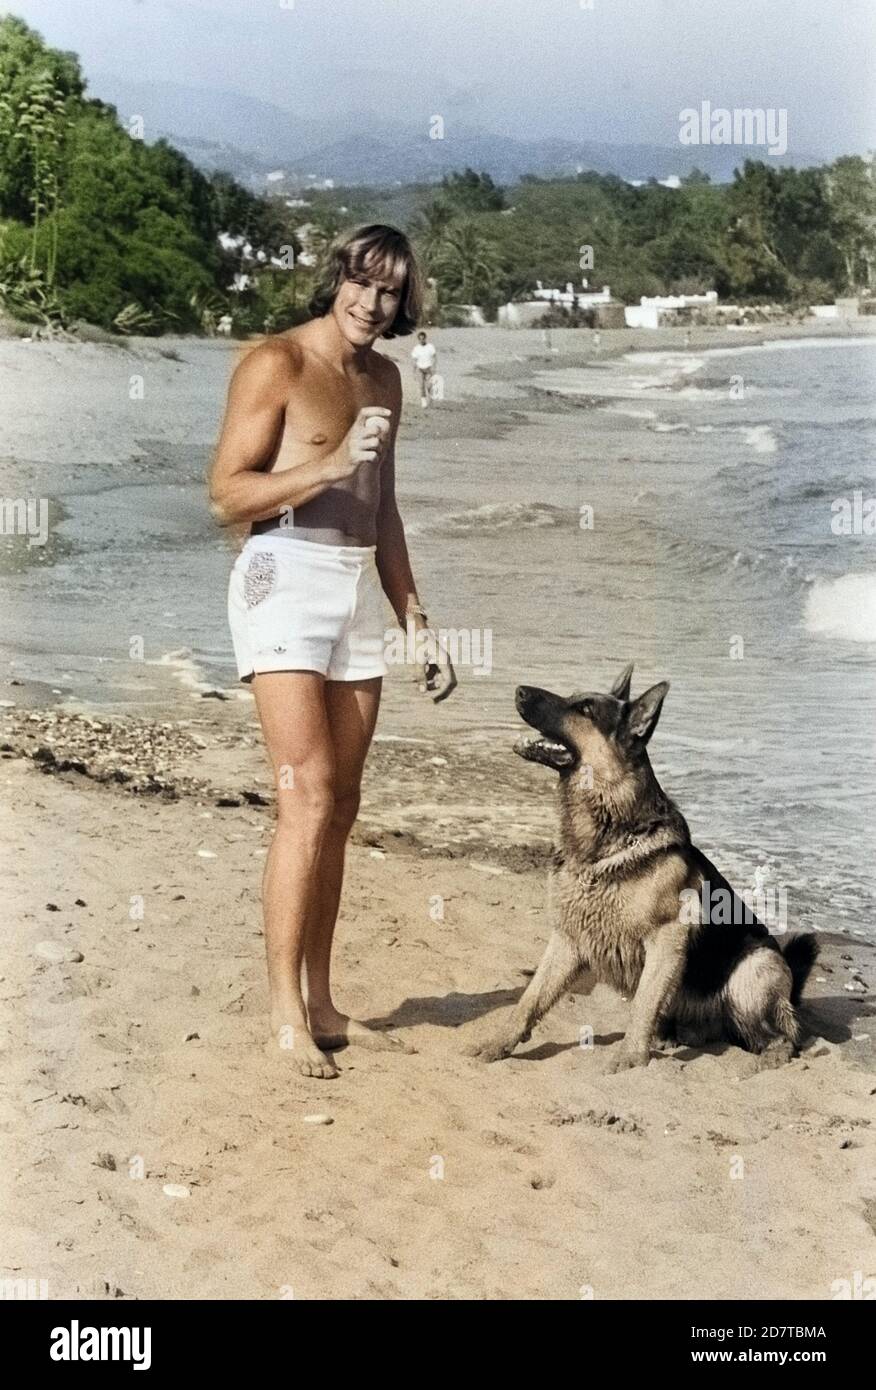 James Hunt, britischer Autorennfahrer, mit seinem Hund am Strand, um 1974. British car racing driver James Hunt con il suo cane sulla spiaggia, intorno al 1974. Foto Stock